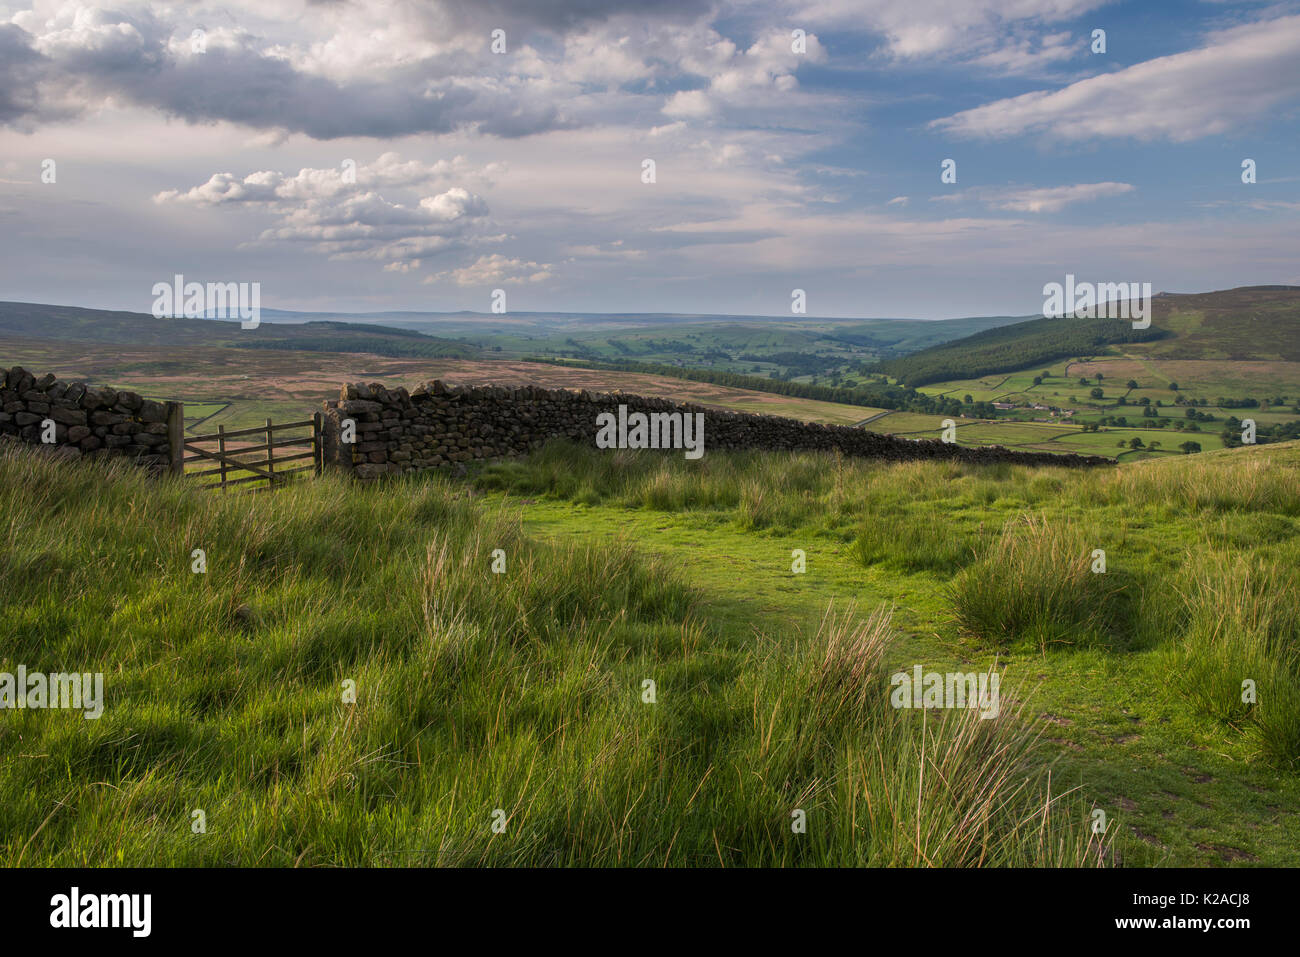 Porta di campo nella pittoresca campagna di laminazione, nello Yorkshire, Inghilterra, Regno Unito - Appletreewick nella valle di Wharfedale oltre & Simon sede del vertice a destra. Foto Stock